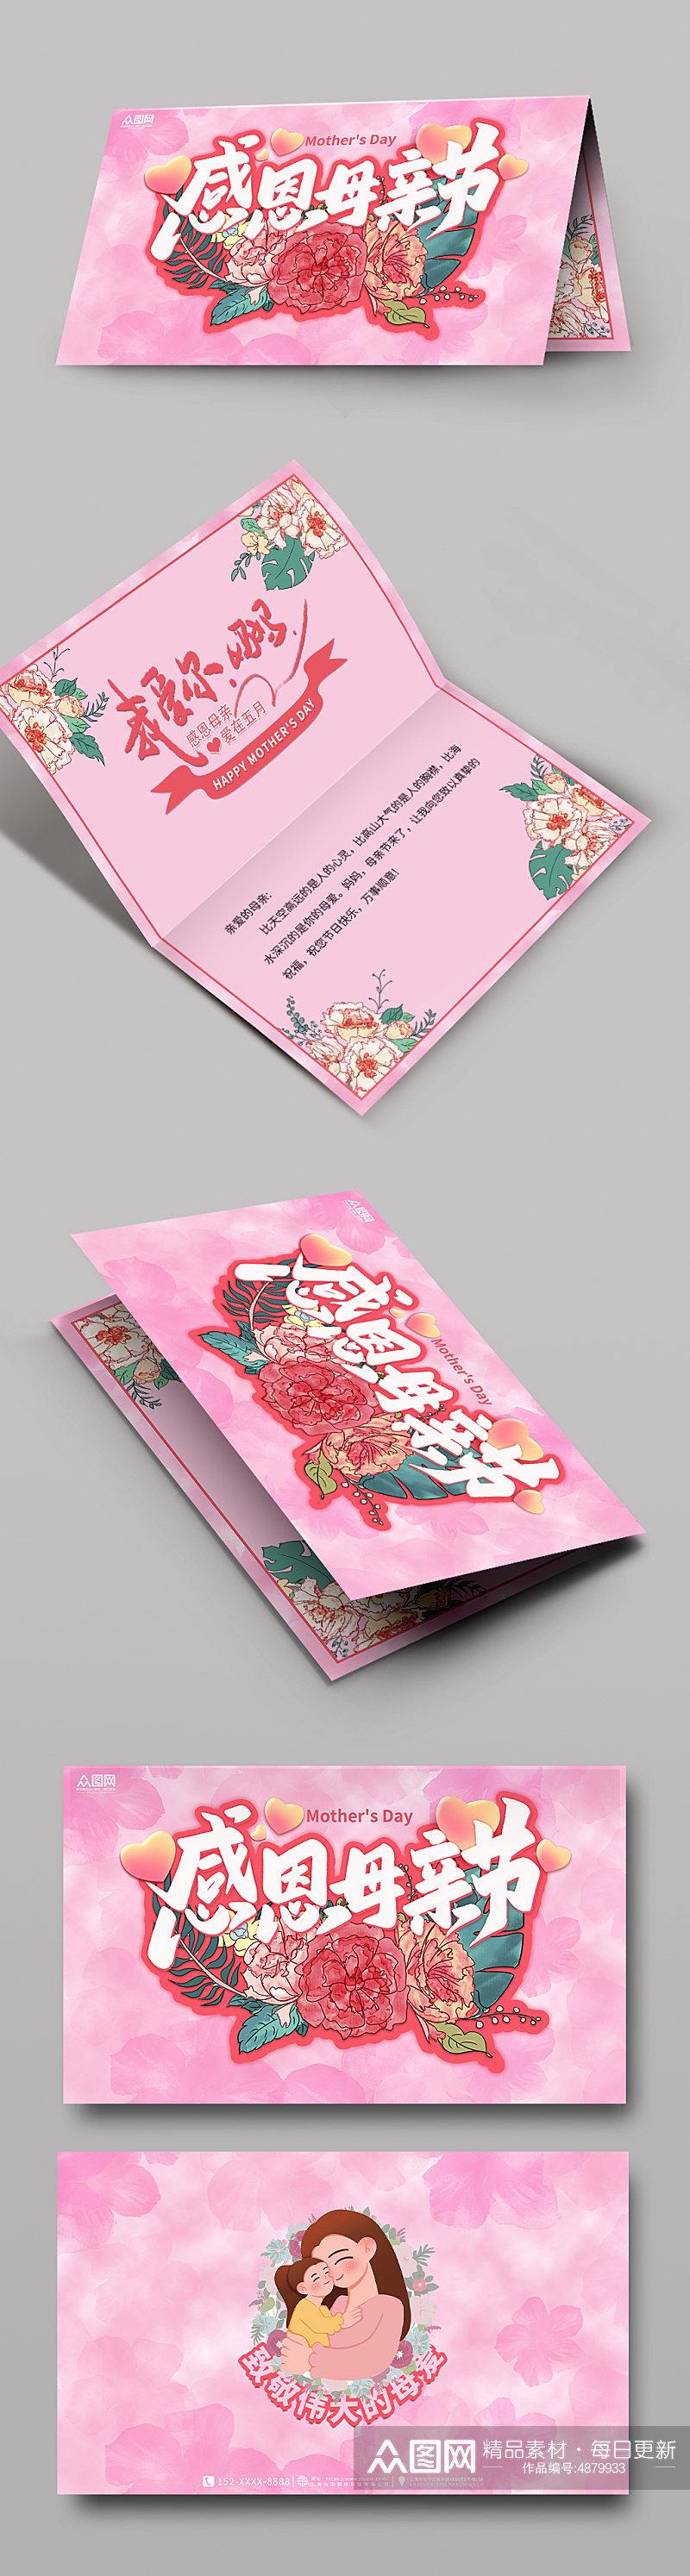 粉色温馨母亲节卡片贺卡设计素材